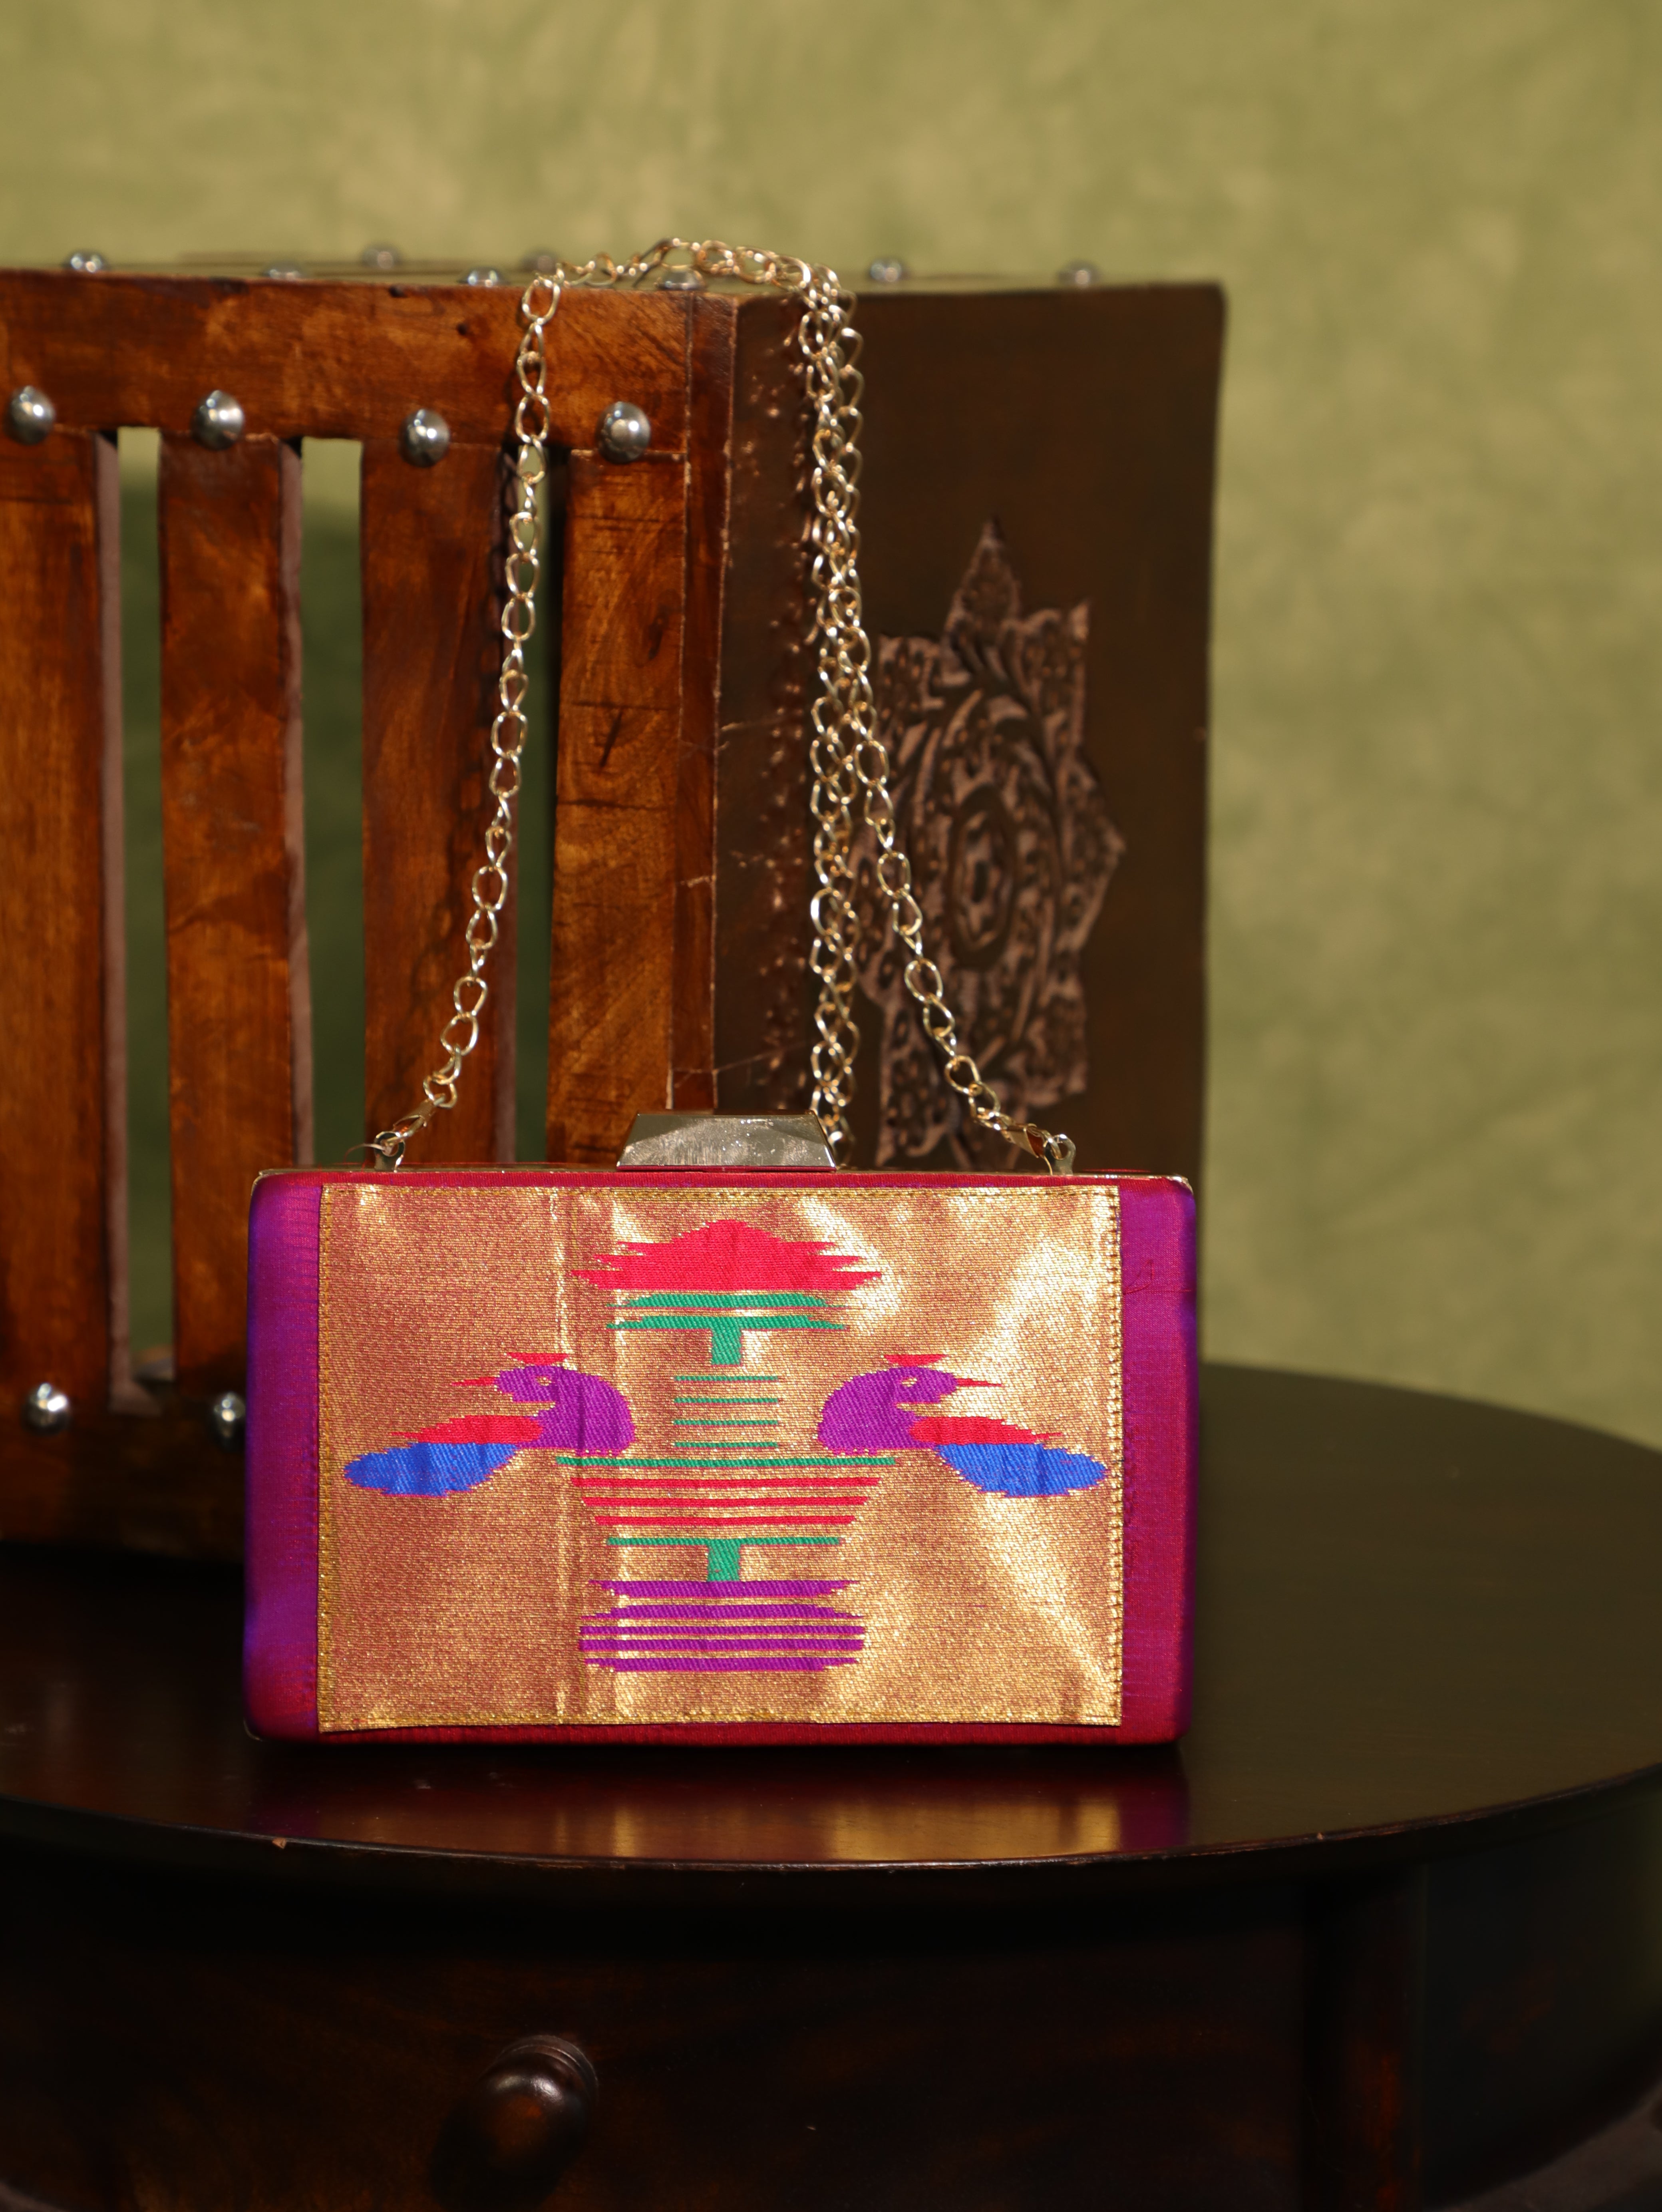 Latest paithani purses with price |Fabric purse |paithani bags  #newdesignpurses - YouTube